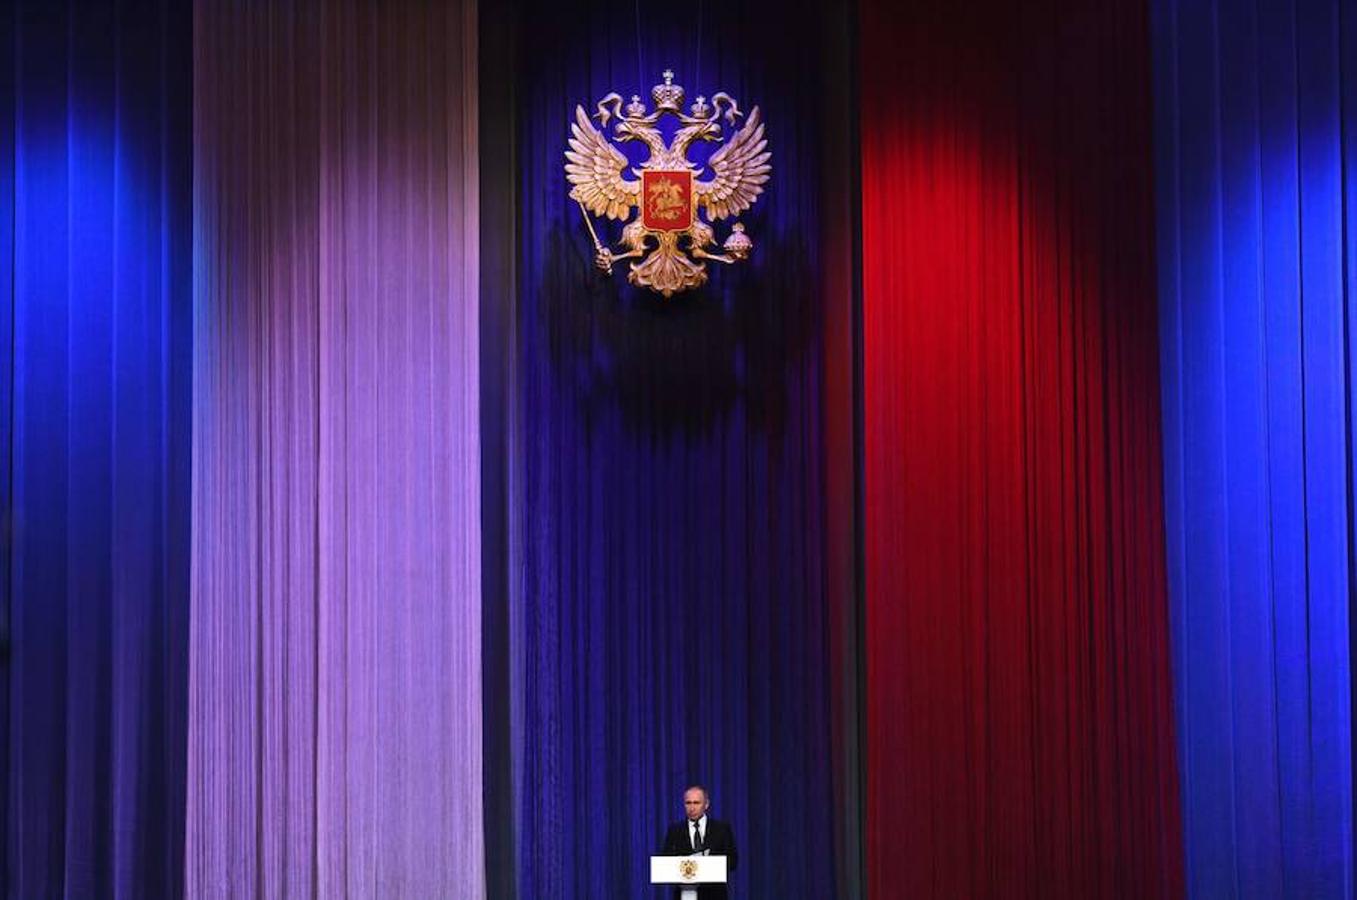 Rusia celebra la fiesta del Defensor de la Patria. Putin ha realizaodo un discurso oficial con motivo de esta festividad desde el Kremlin.